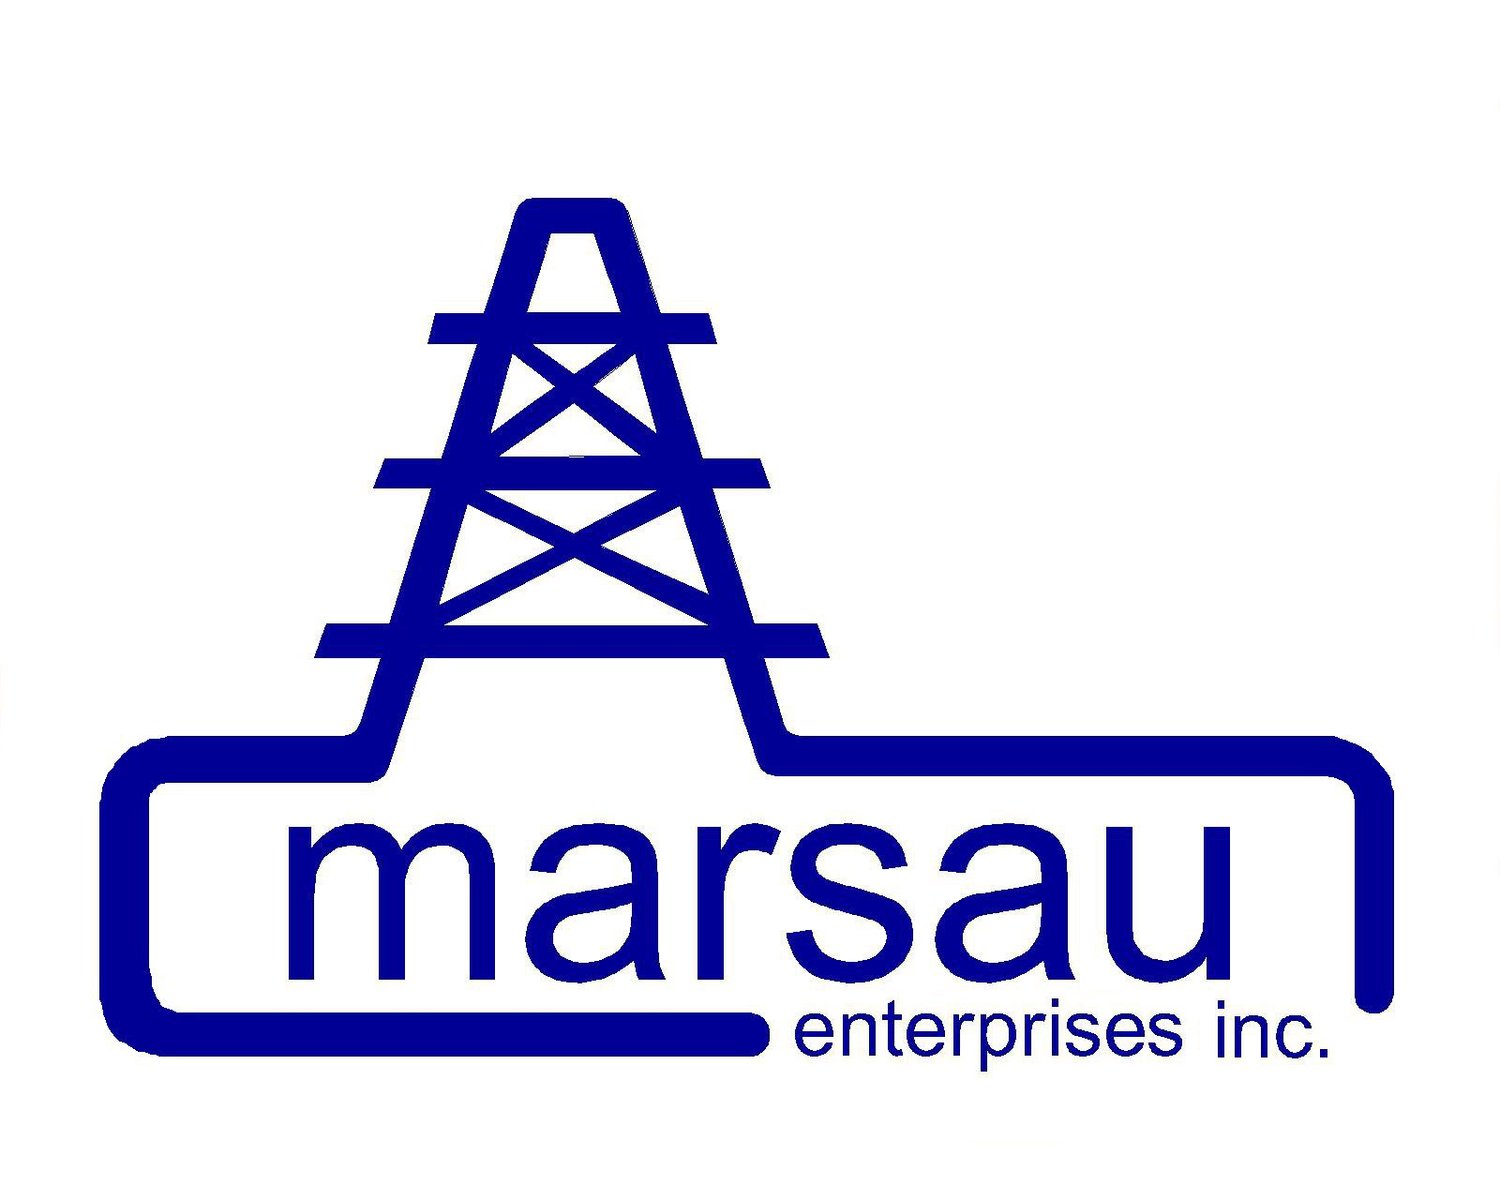 marsau enterprises inc.